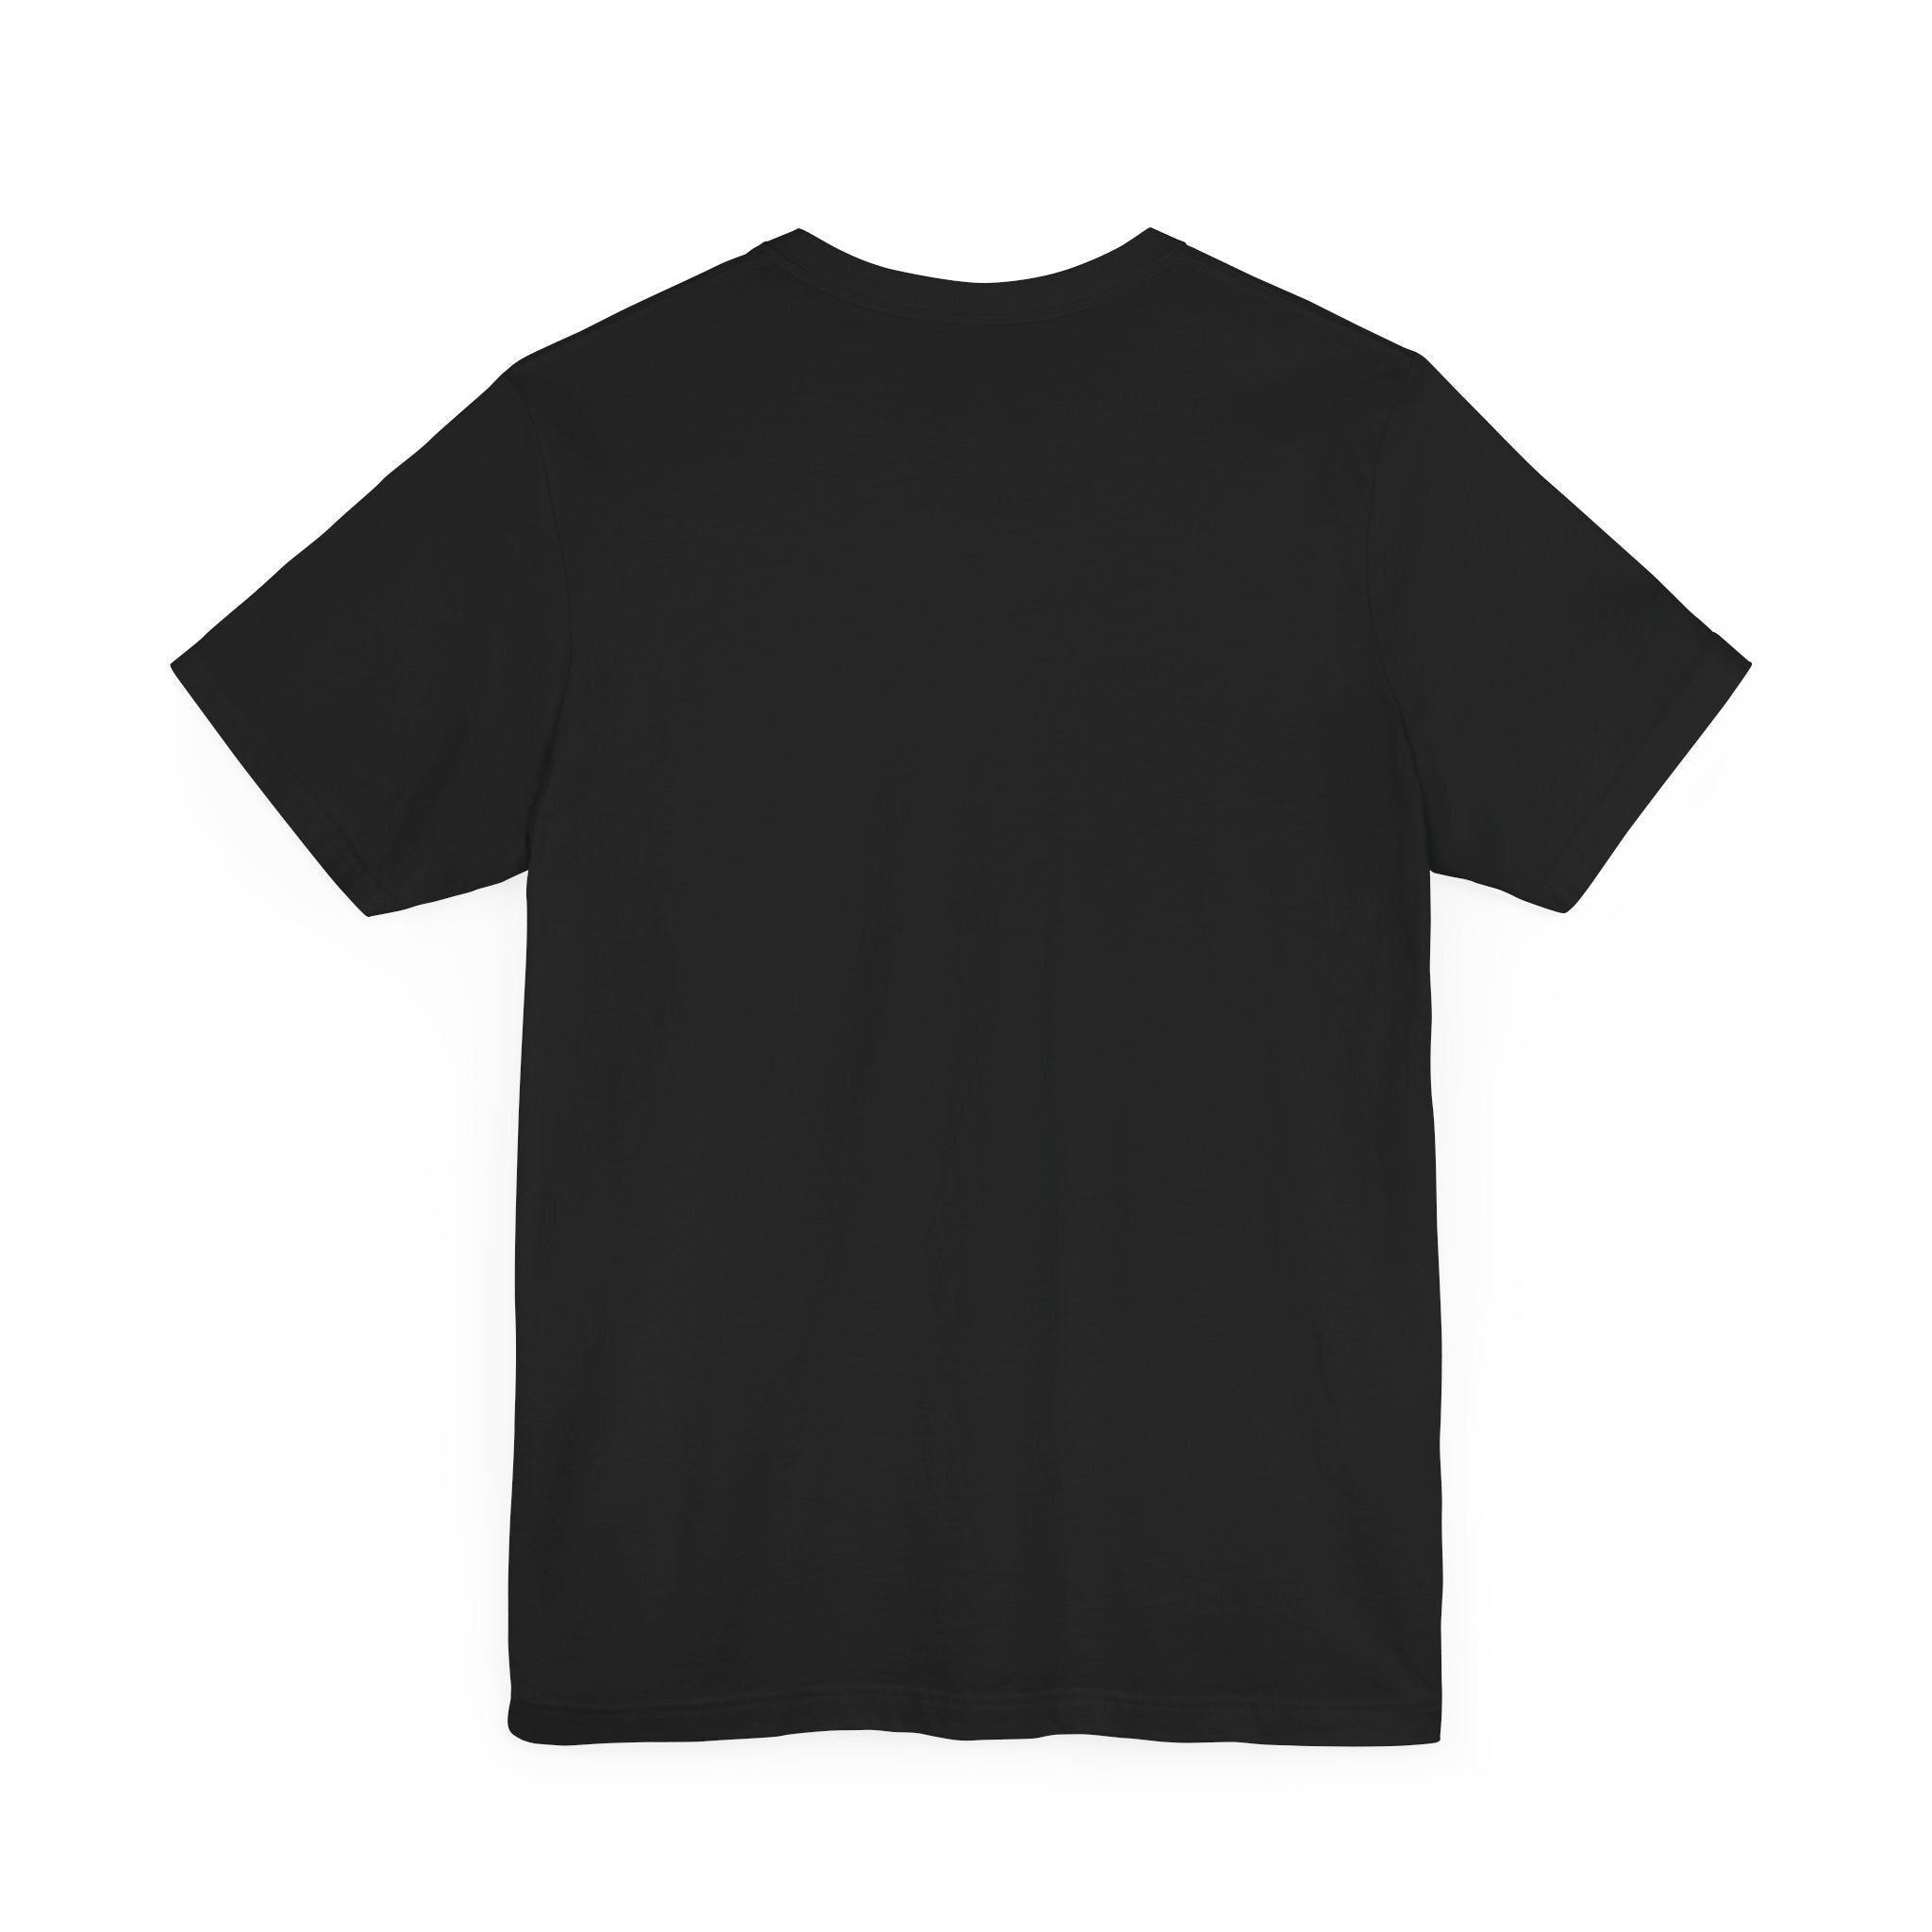 Doflamingo T-Shirt